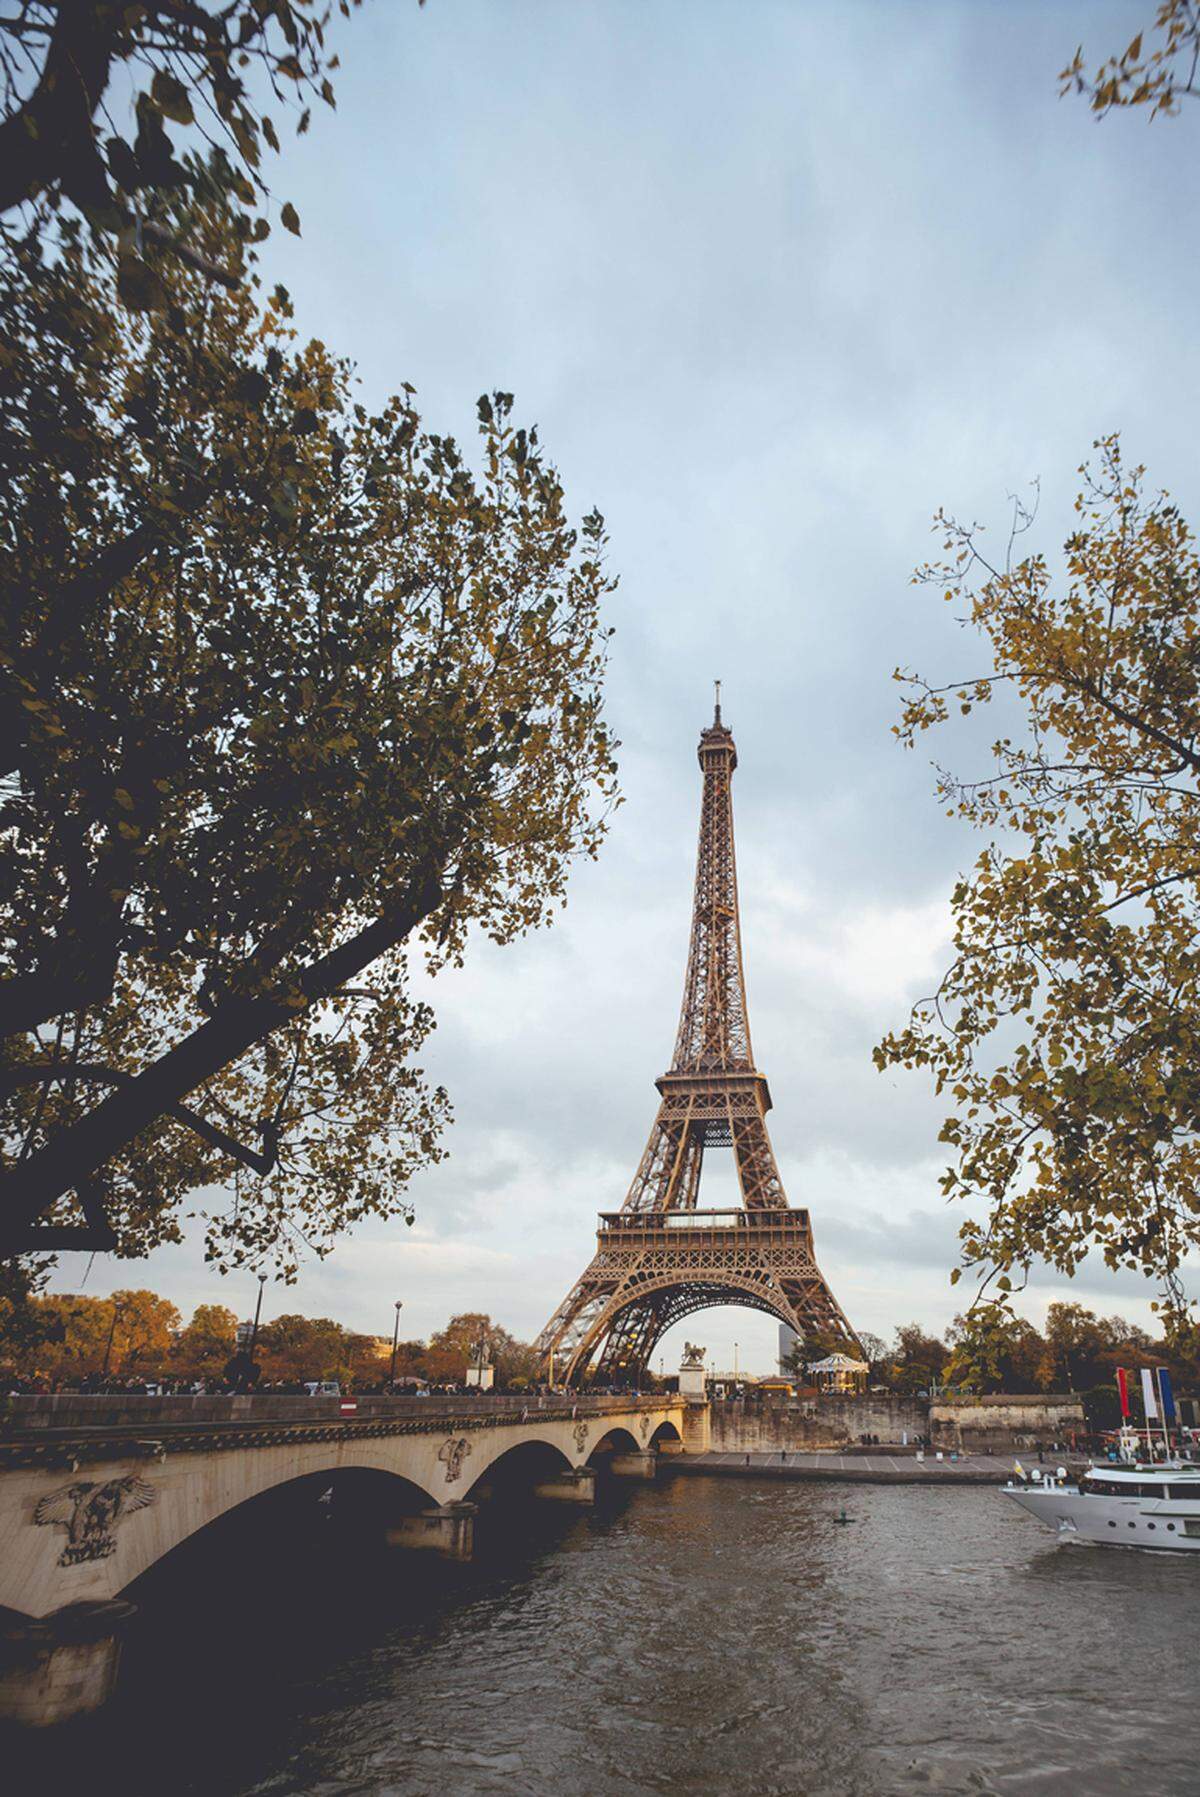 Das von 1887 bis 1889 errichtete Bauwerk wurde als Eingangsportal und Aussichtsturm für die Weltausstellung und als Erinnerung an den 100. Jahrestag der Französischen Revolution errichtet. Der 312 Meter hohe Turm gehört mit rund sieben Millionen Besuchern zum meistbesuchten Wahrzeichen der Welt.